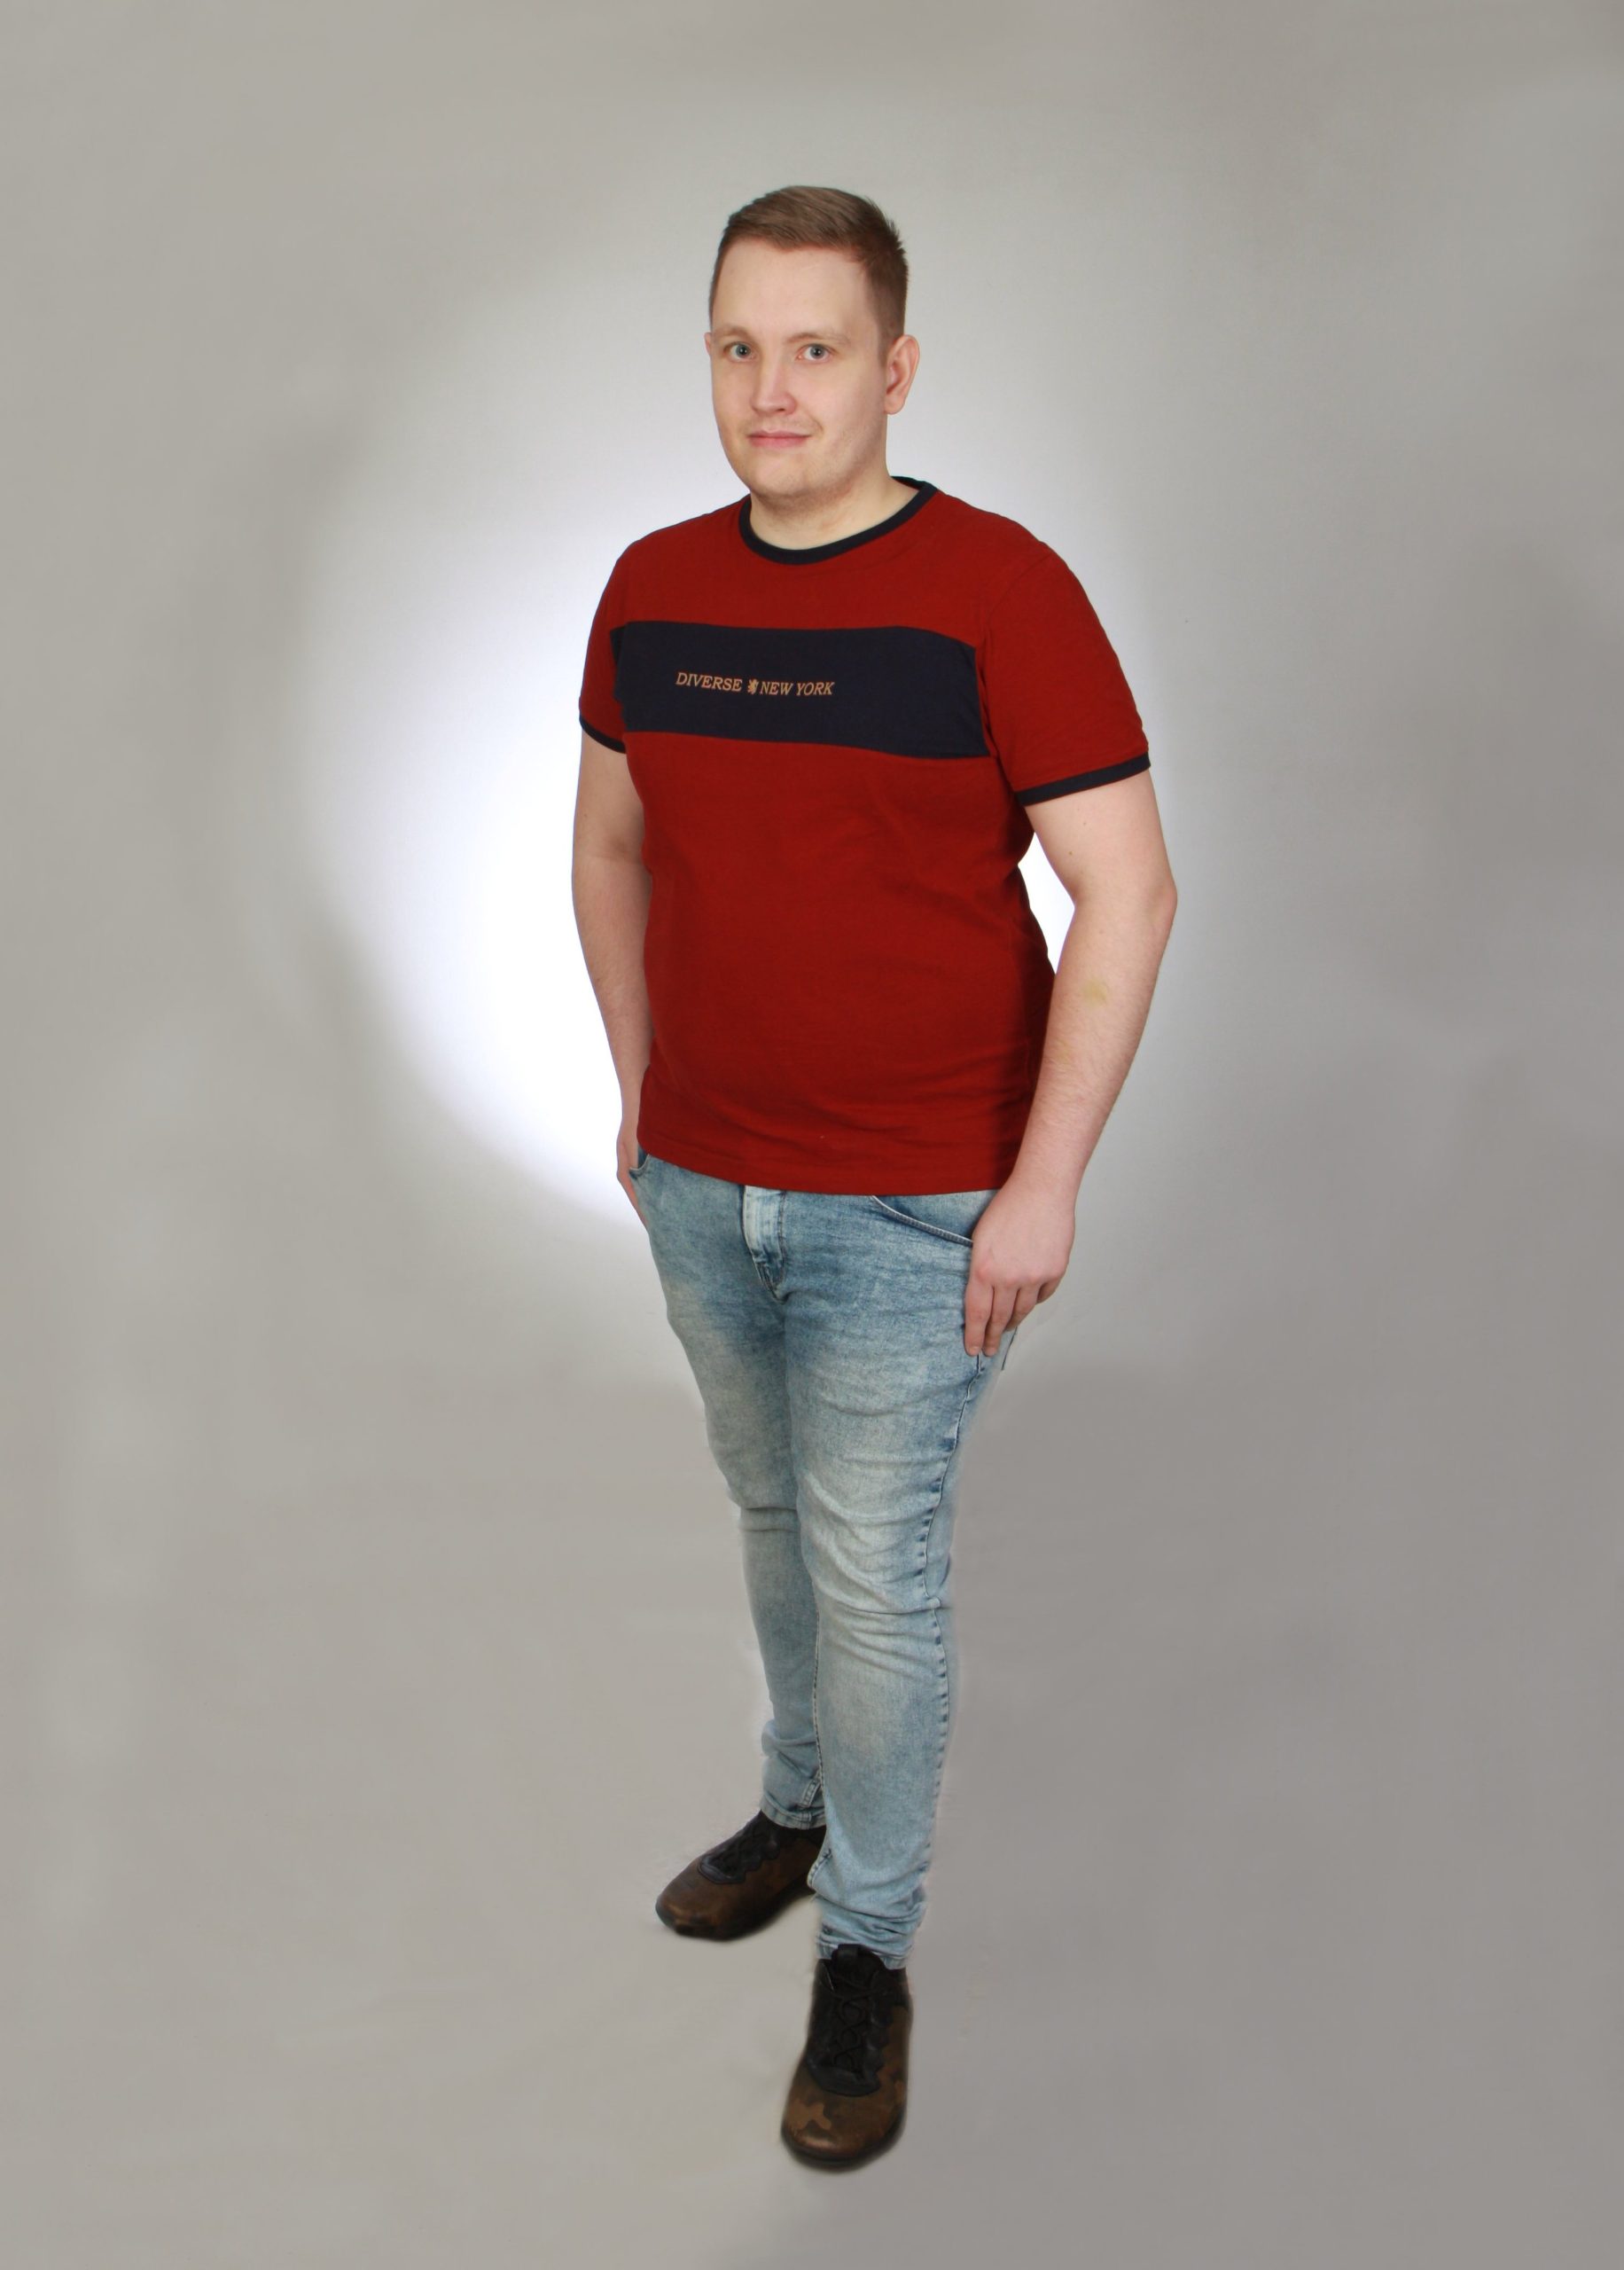 Zdjęcie Tomka - młodego mężczyzny ubranego z dżinsy i czerowny t-shirt. Zdjęcie zrobione w studio, na białym tle.